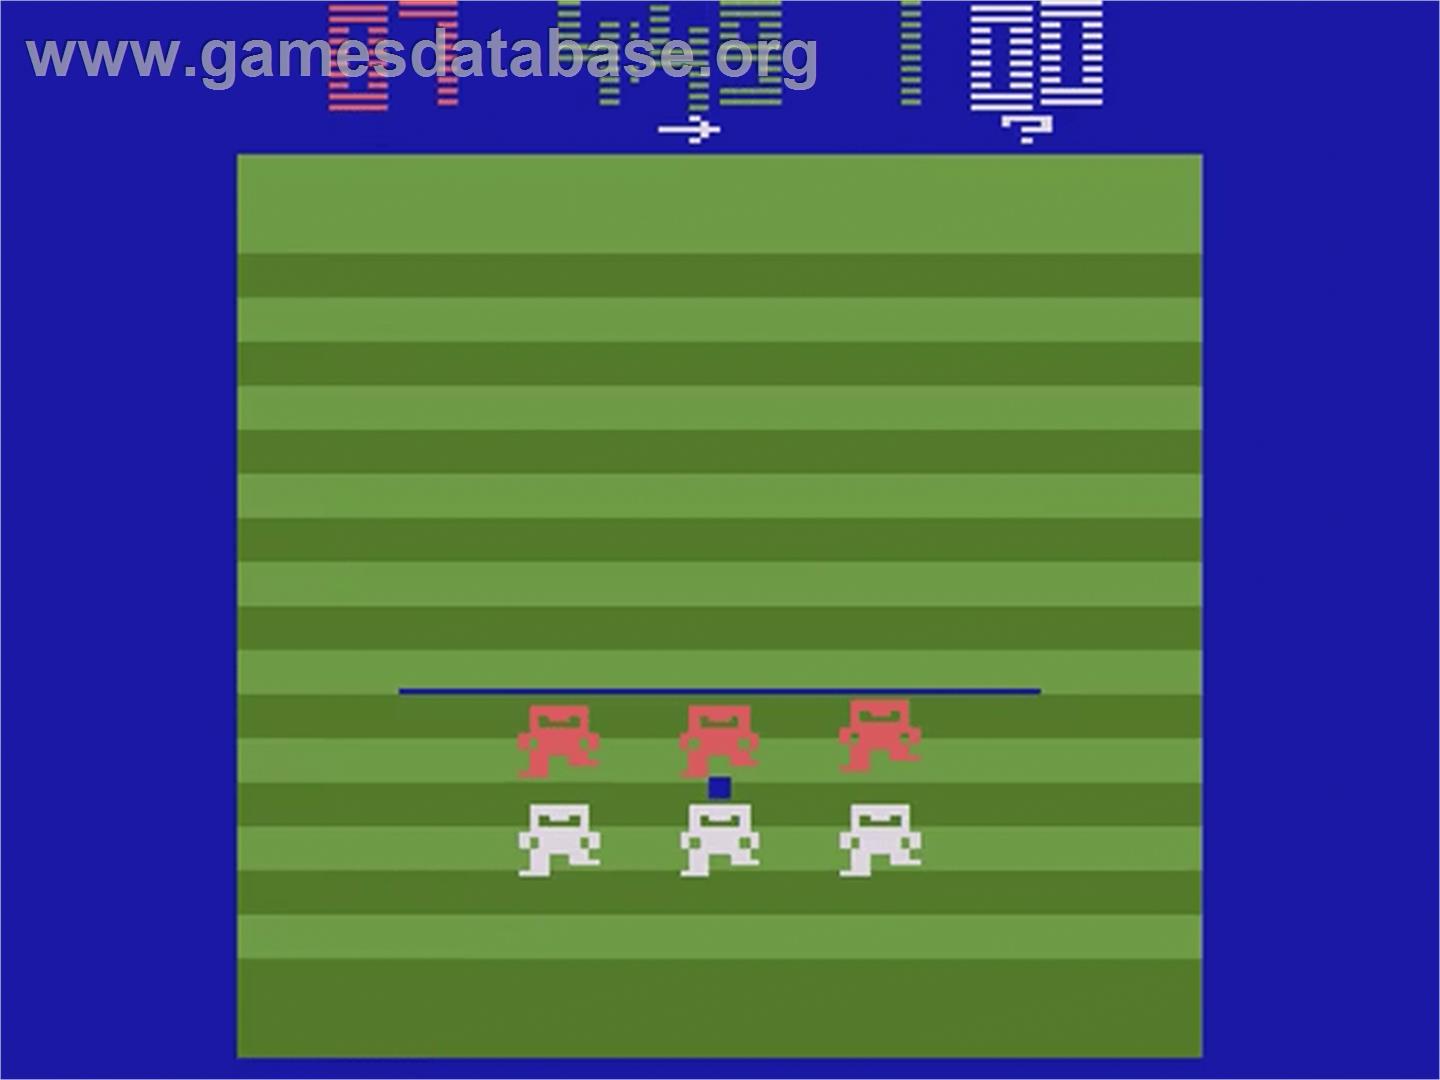 Super Football - Atari 2600 - Artwork - In Game